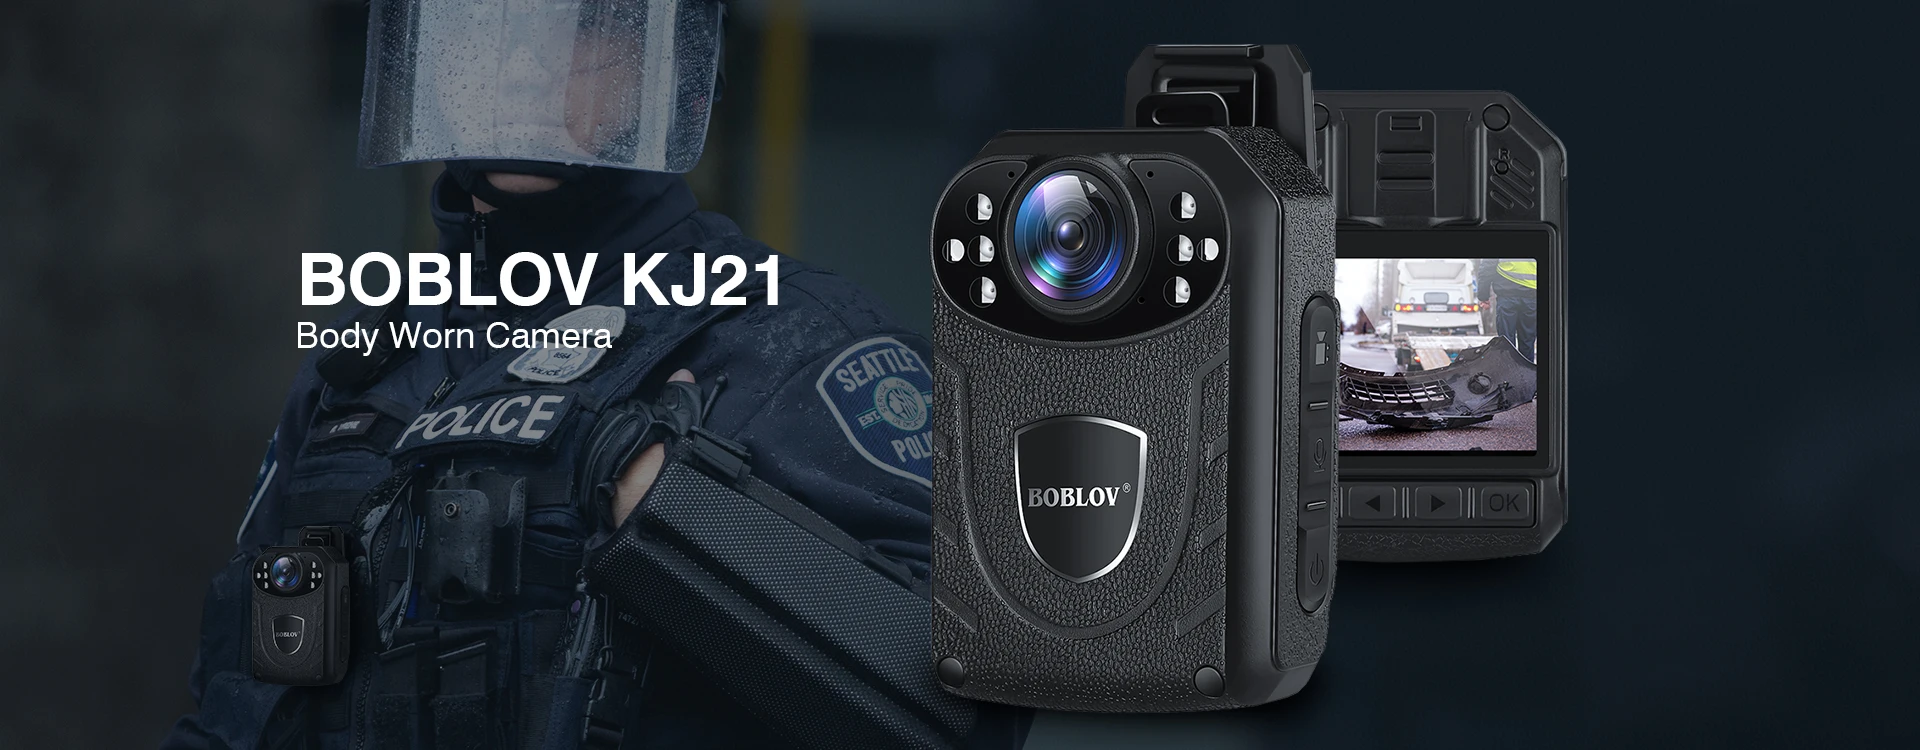 Boblov 4000 PIXEL PICCOLO Corpo di Polizia fotocamera macchina fotografica della polizia per l'uso della polizia di viaggio. 